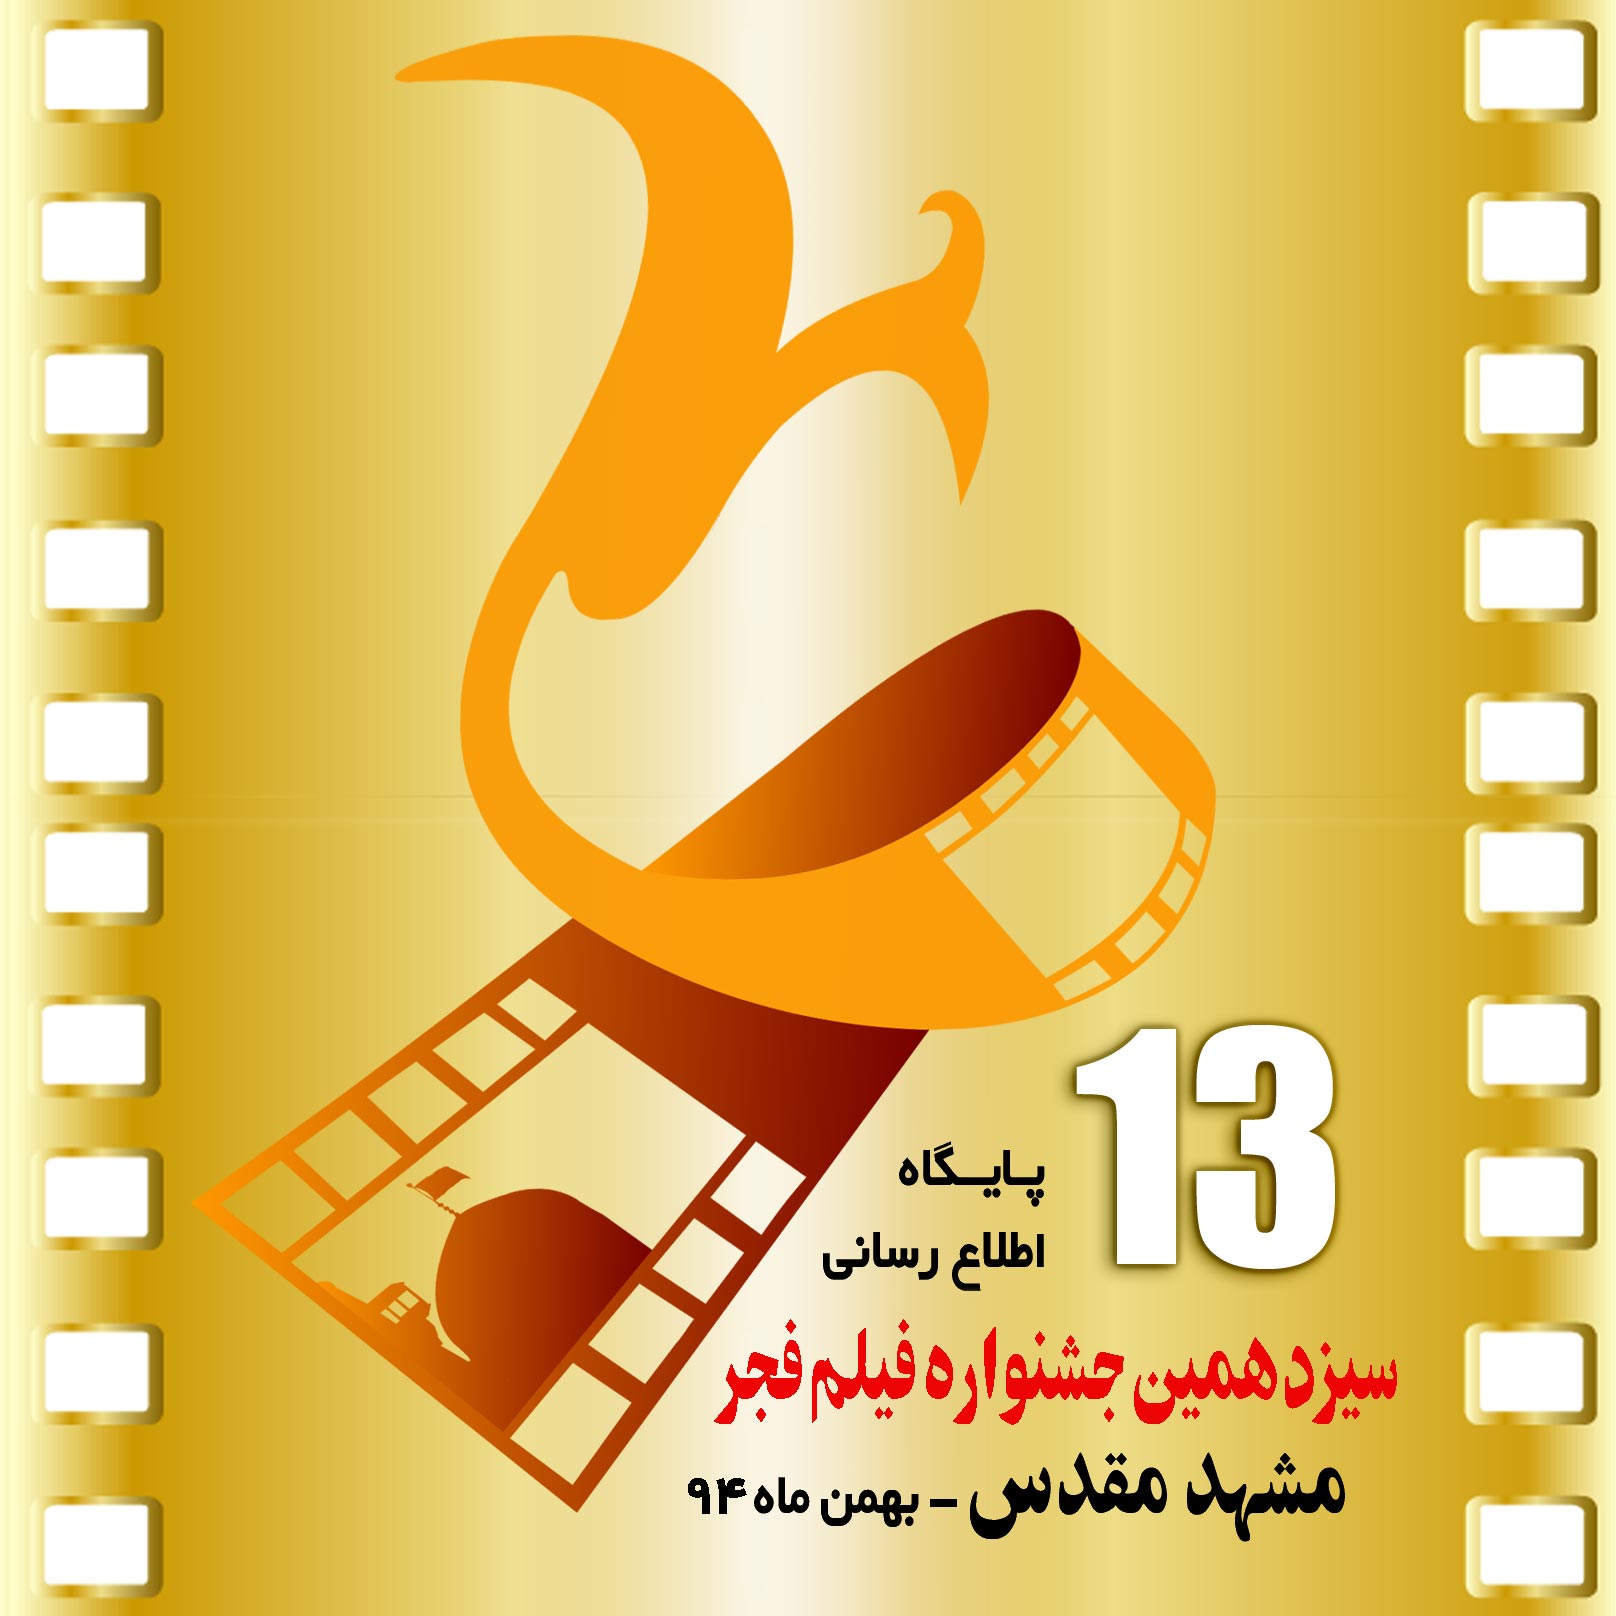   جشنواره فیلم فجر دیگر مختص پایتخت نیست